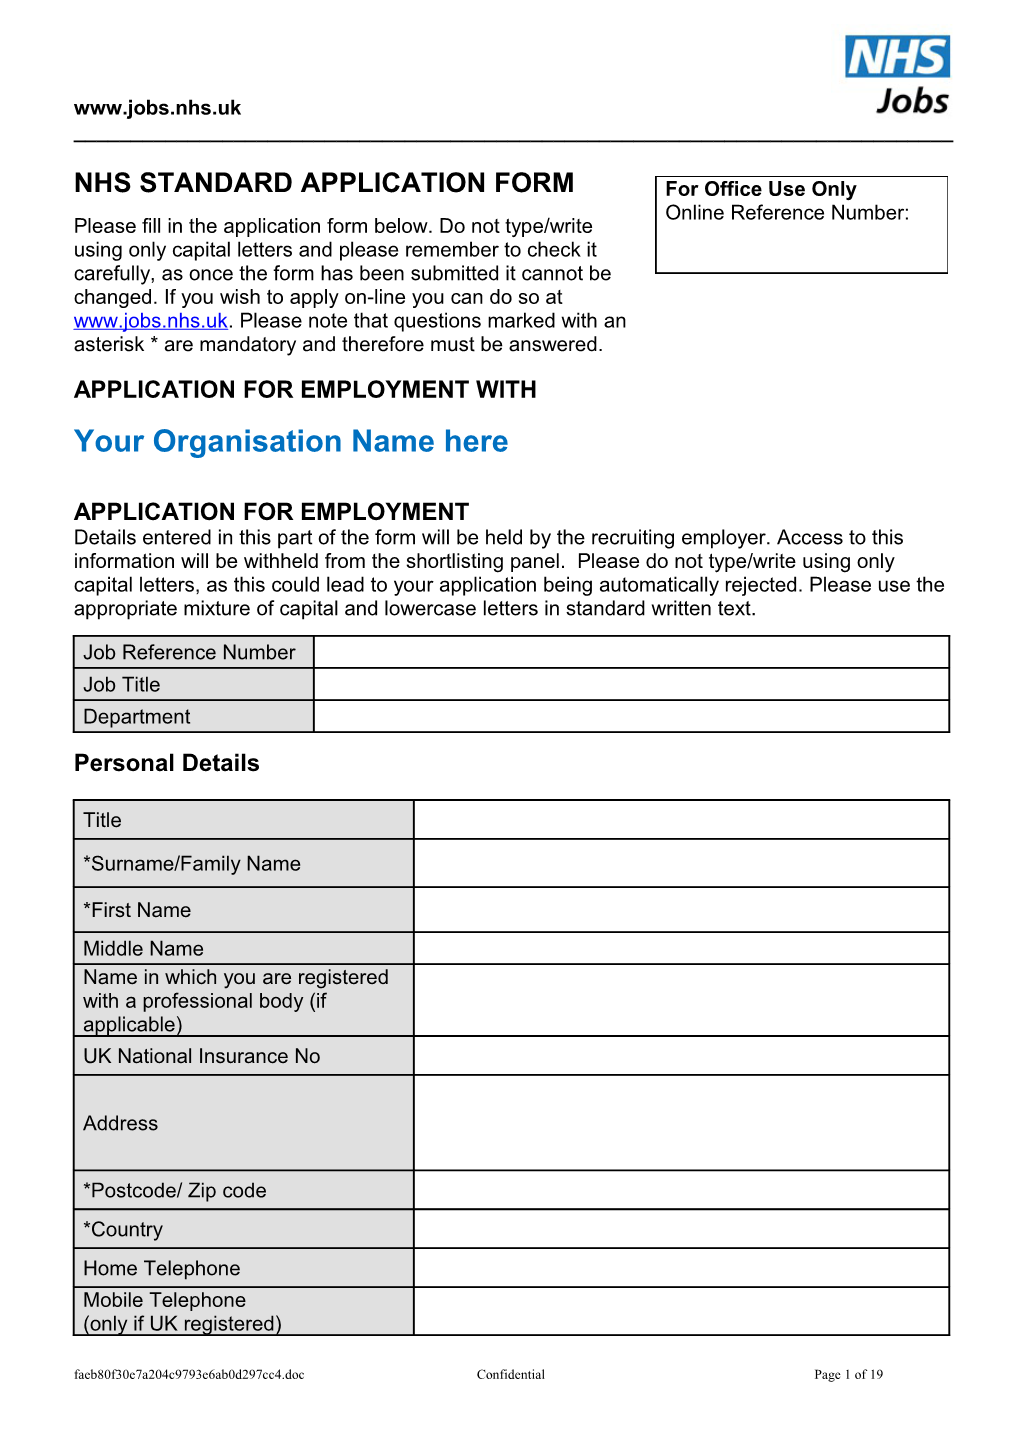 NHS Standard Application Form s5